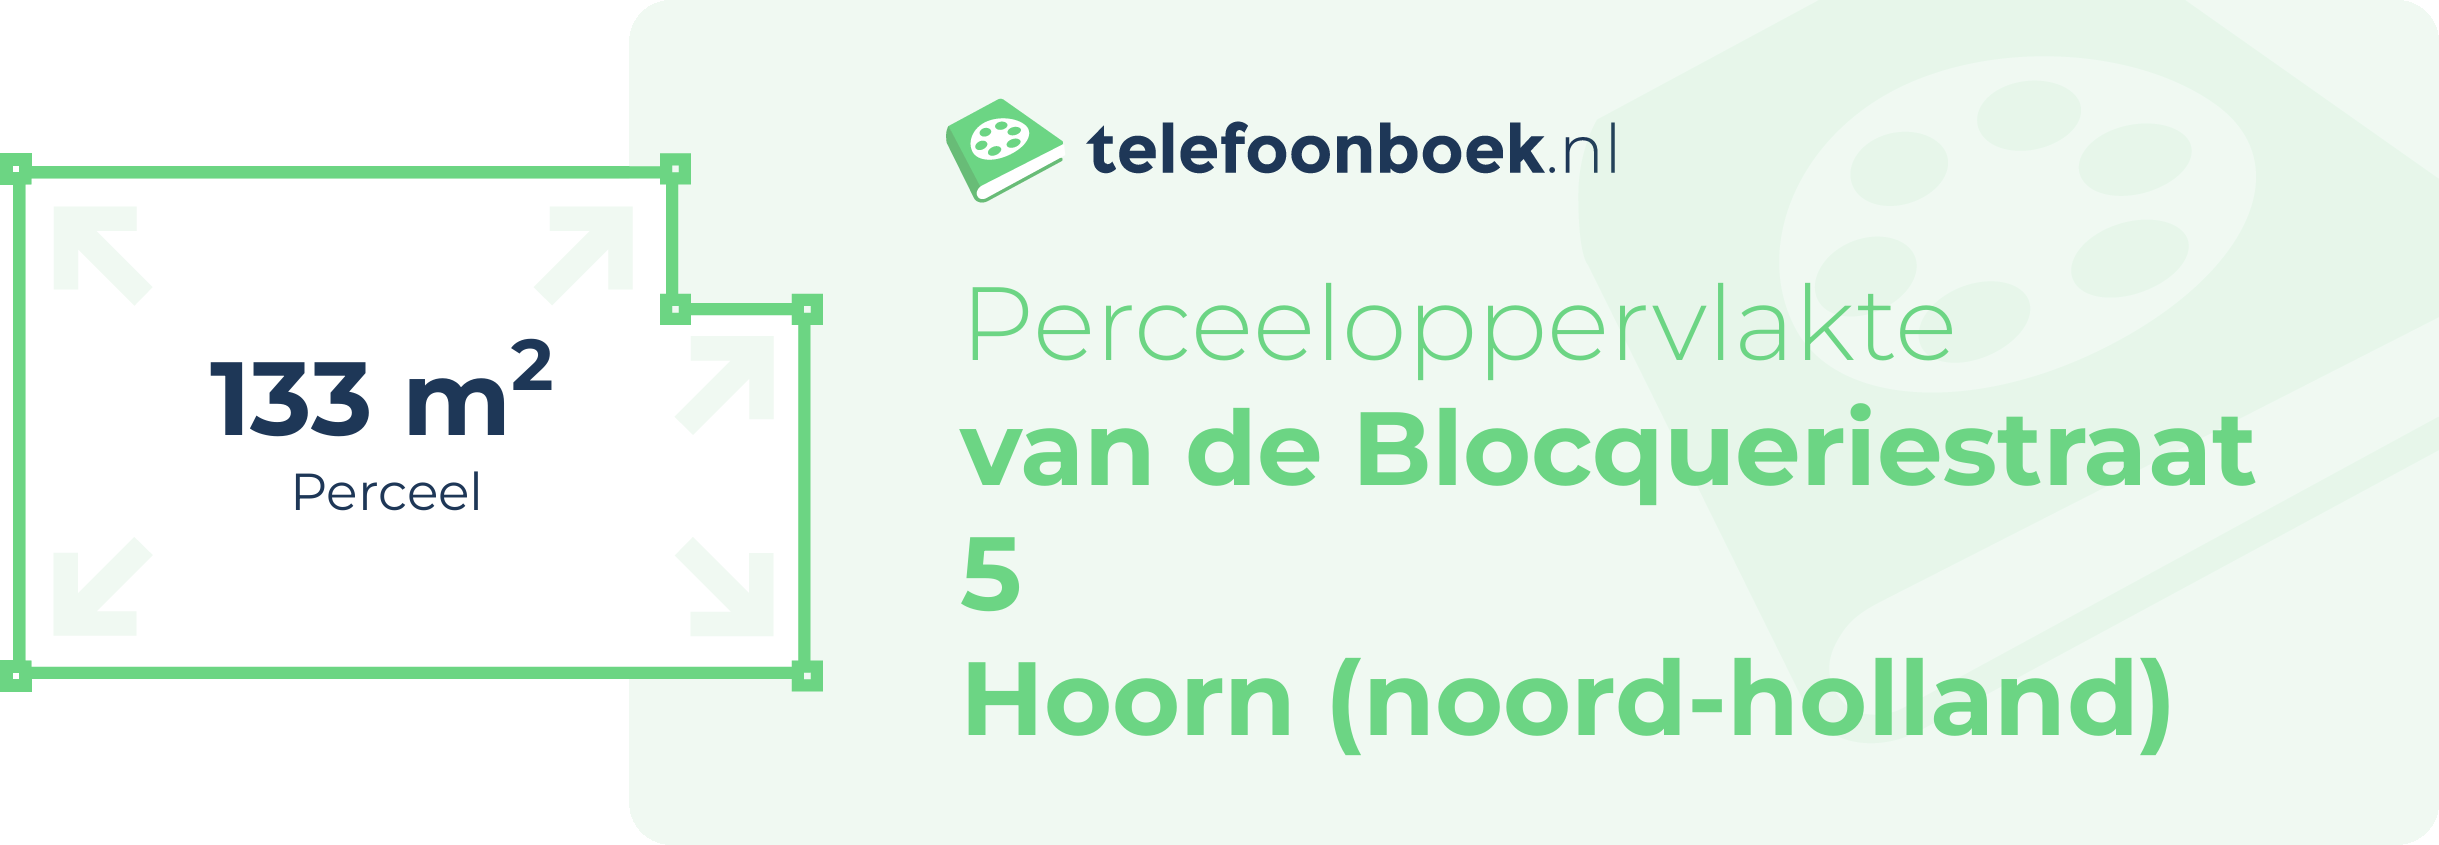 Perceeloppervlakte Van De Blocqueriestraat 5 Hoorn (Noord-Holland)